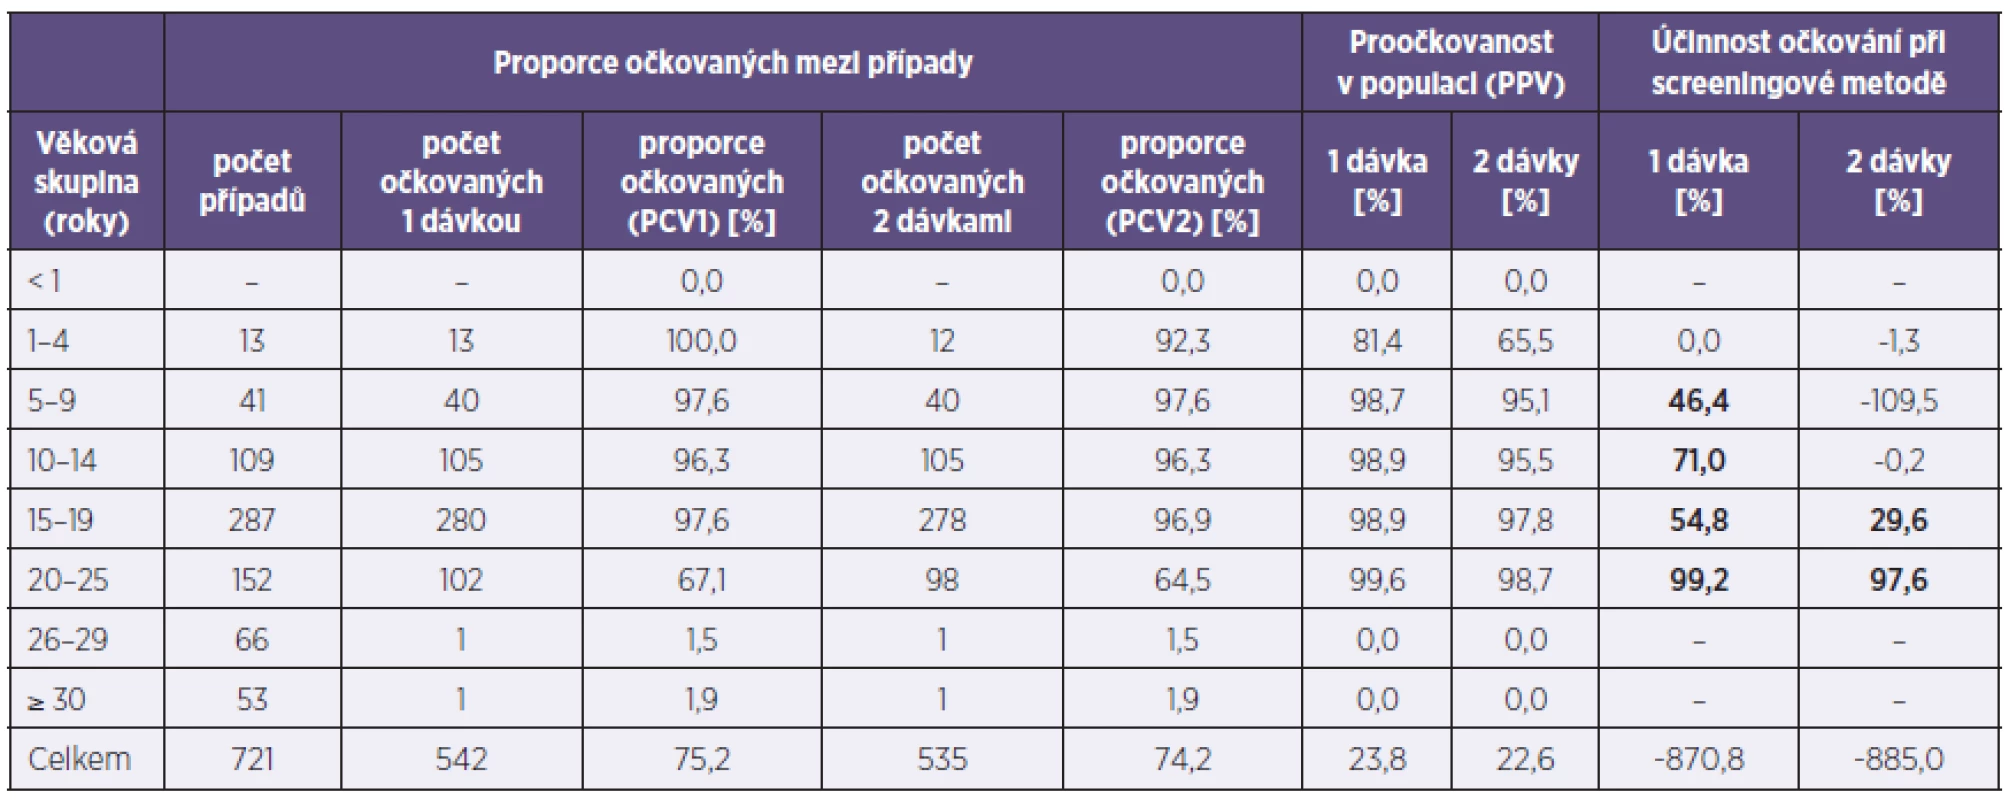 Účinnost očkování proti příušnicím (Plzeňský kraj, 2011)
Table 3. Mumps vaccine efficacy (Plzeň Region, 2011)